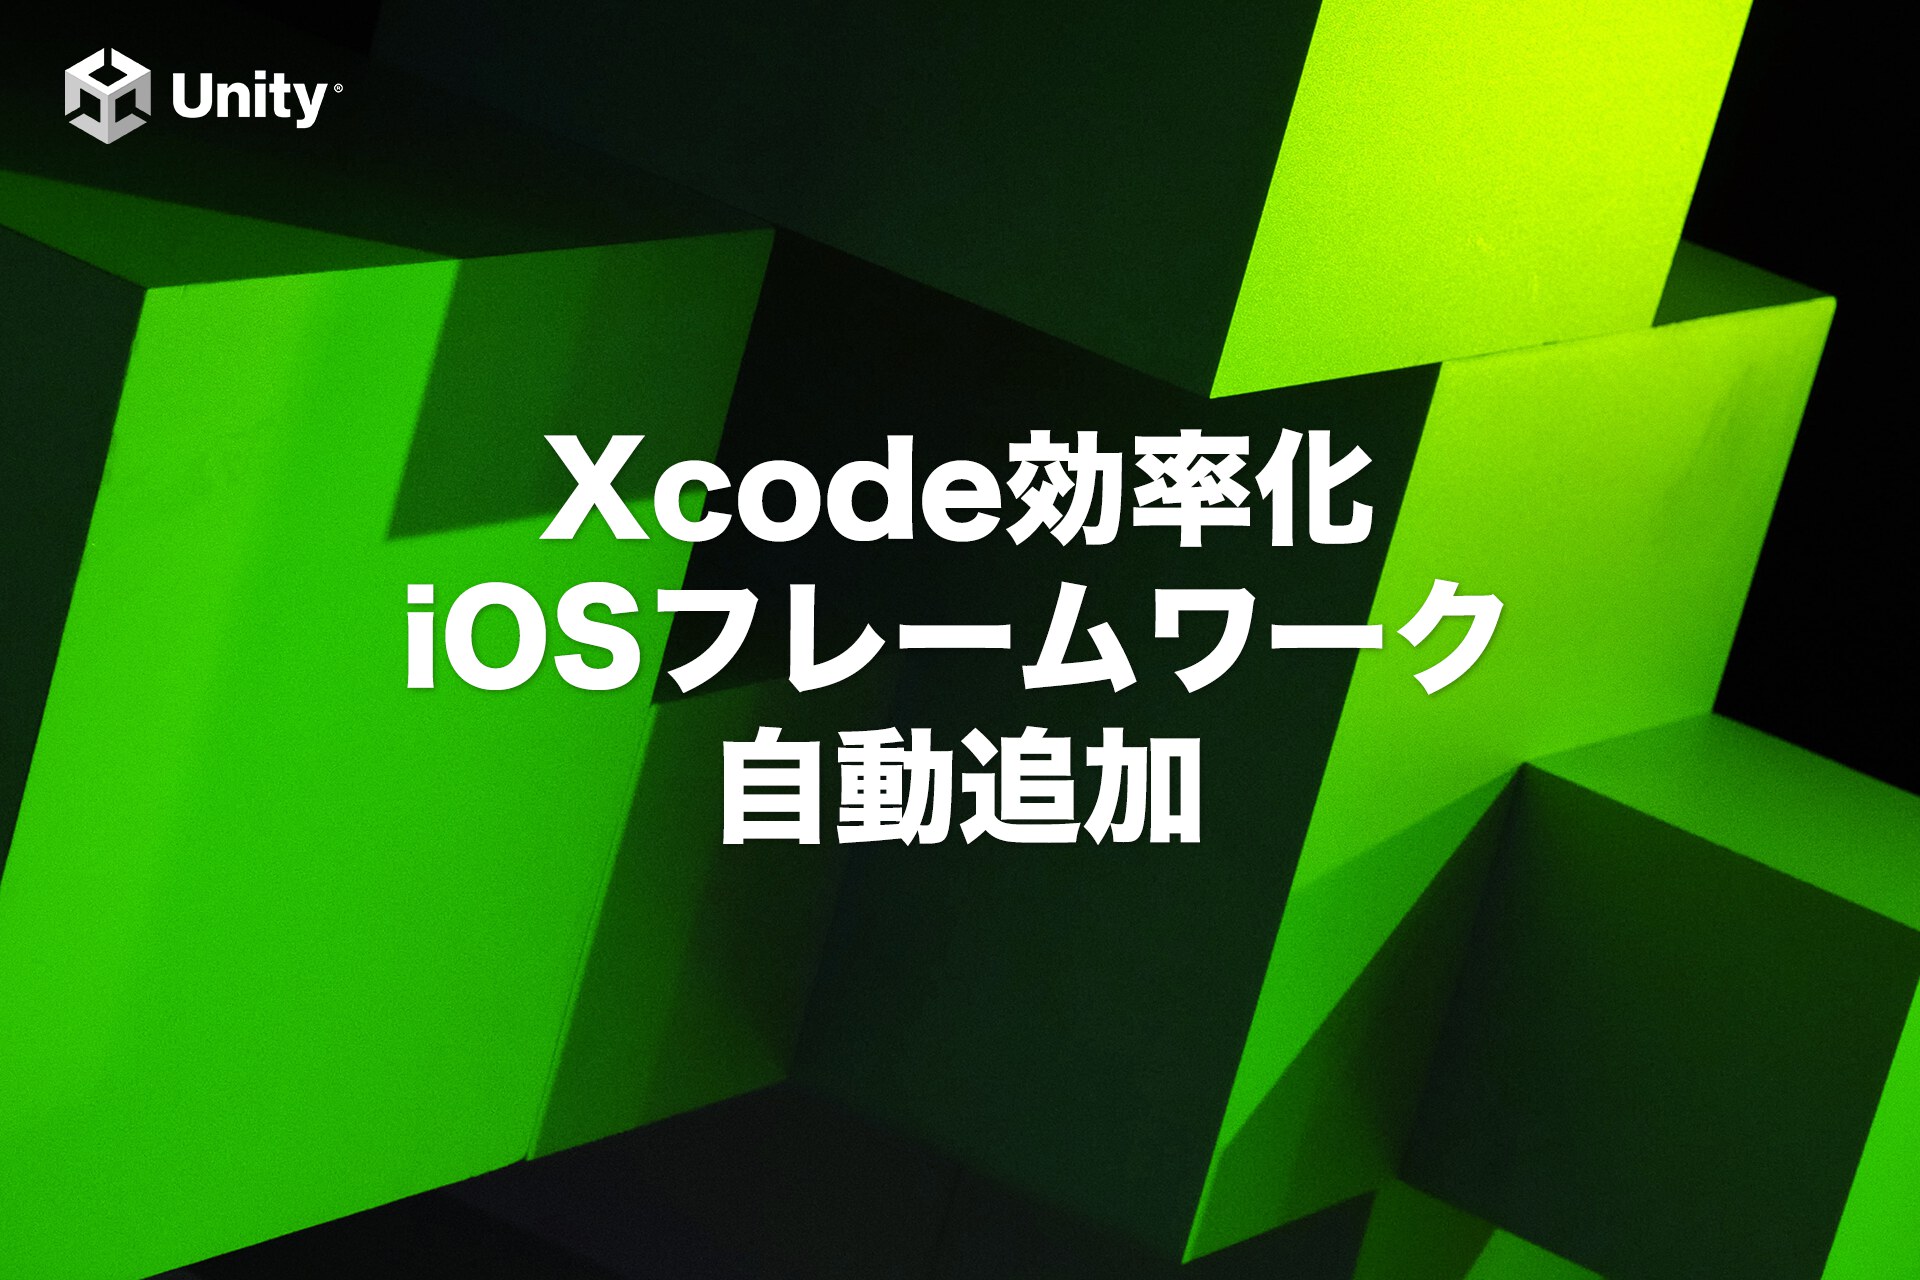 【Xcode】iOSフレームワークをUnityで自動追加する方法